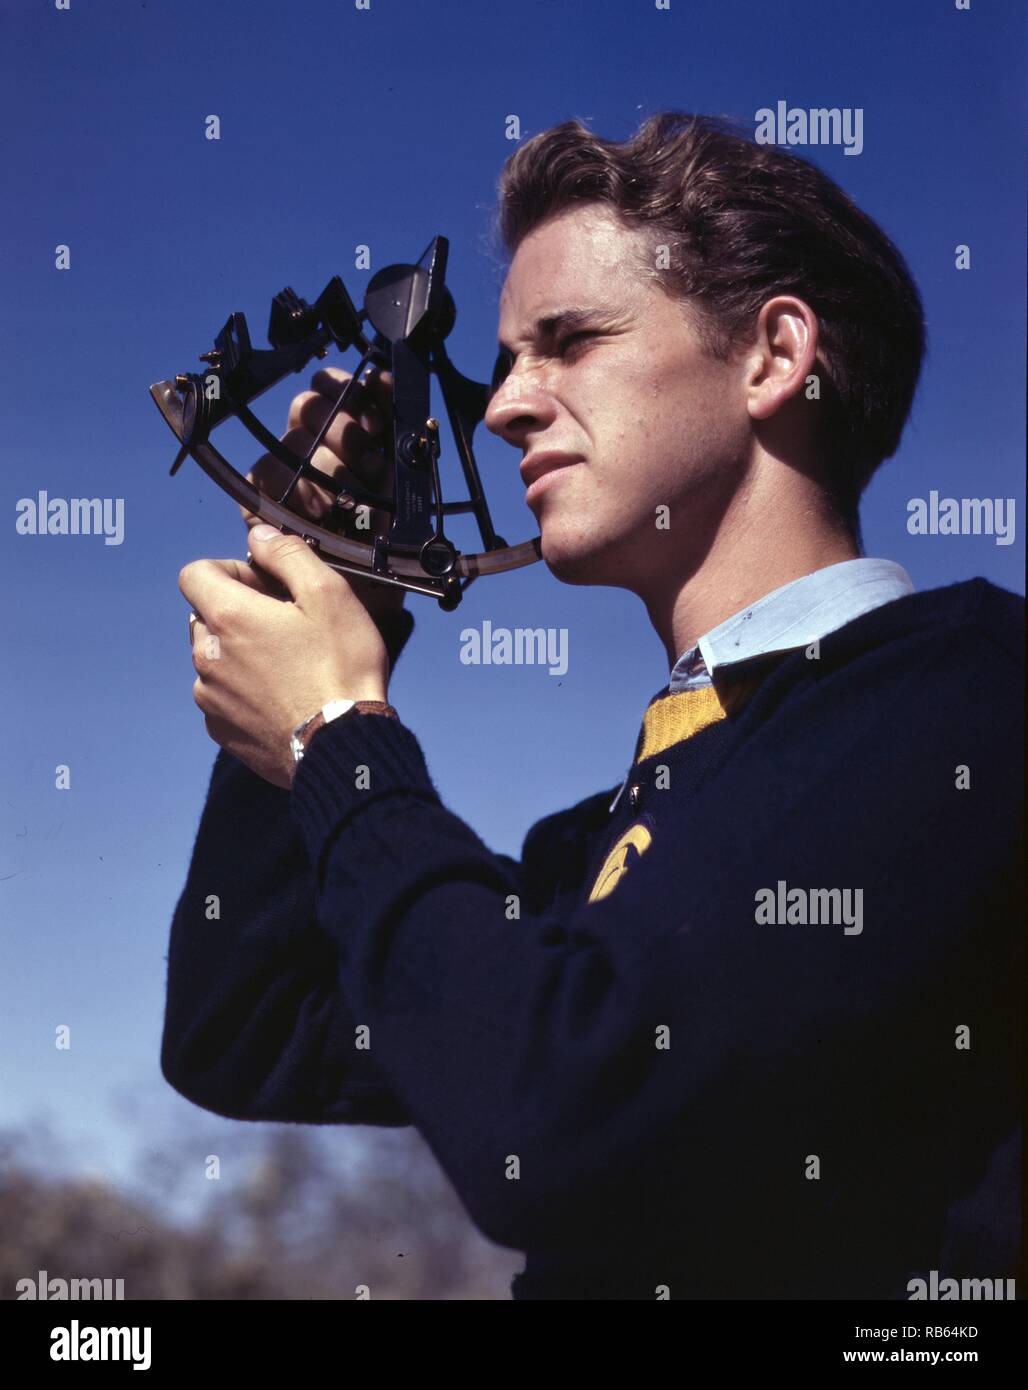 Fotografia di un giovane uomo che vengono preparati nei fondamenti della navigazione per eventualmente diventare un tecnico al servizio dell'esercito, Los Angeles, California. Datata 1942 Foto Stock